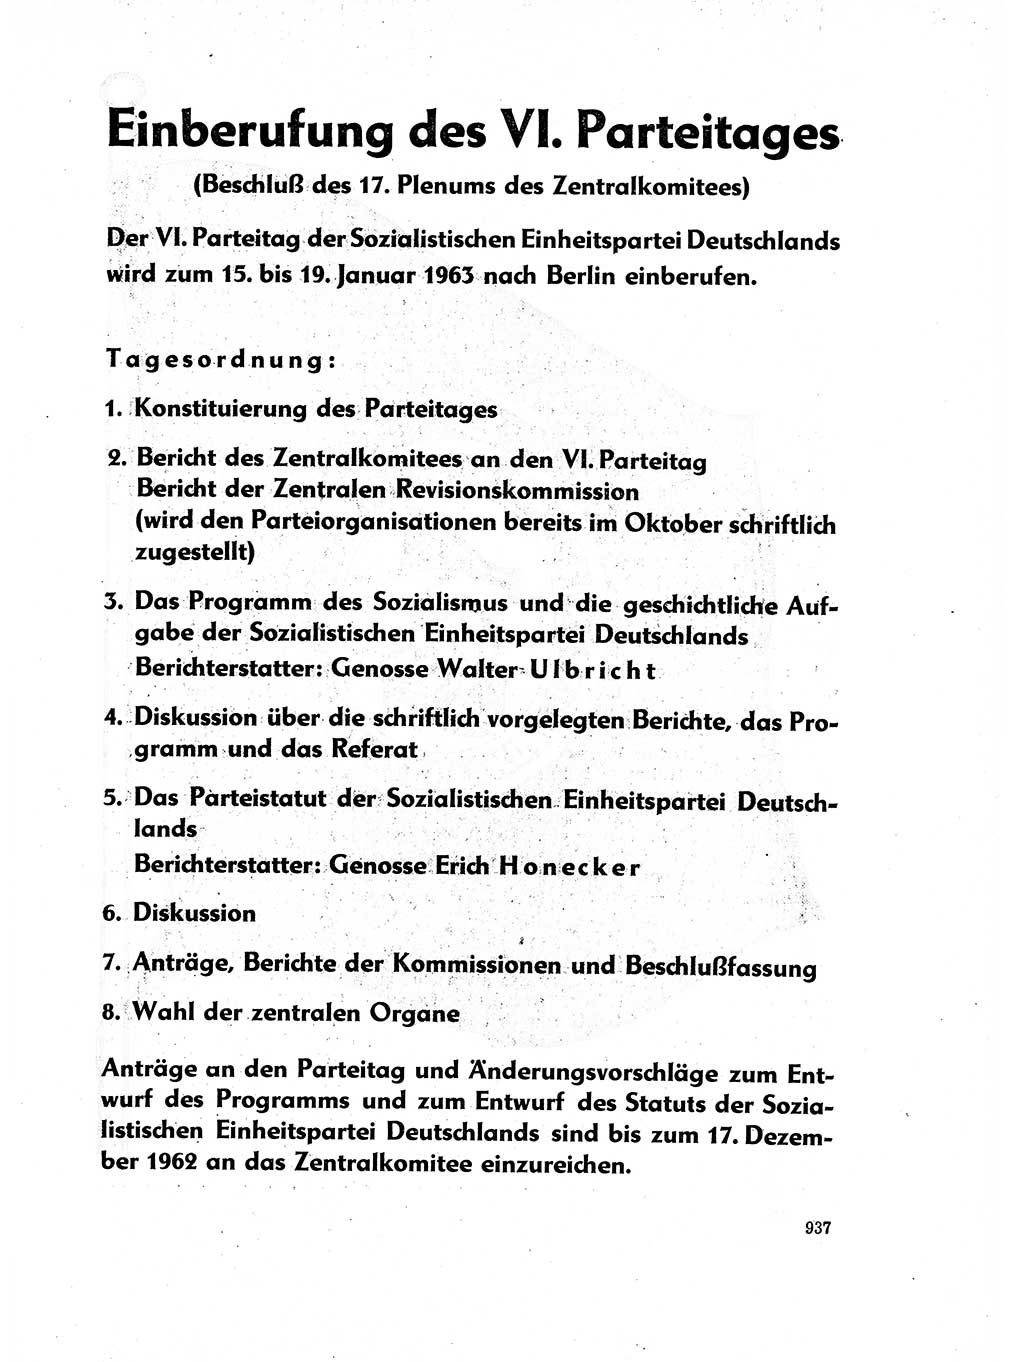 Neuer Weg (NW), Organ des Zentralkomitees (ZK) der SED (Sozialistische Einheitspartei Deutschlands) für Fragen des Parteilebens, 17. Jahrgang [Deutsche Demokratische Republik (DDR)] 1962, Seite 937 (NW ZK SED DDR 1962, S. 937)